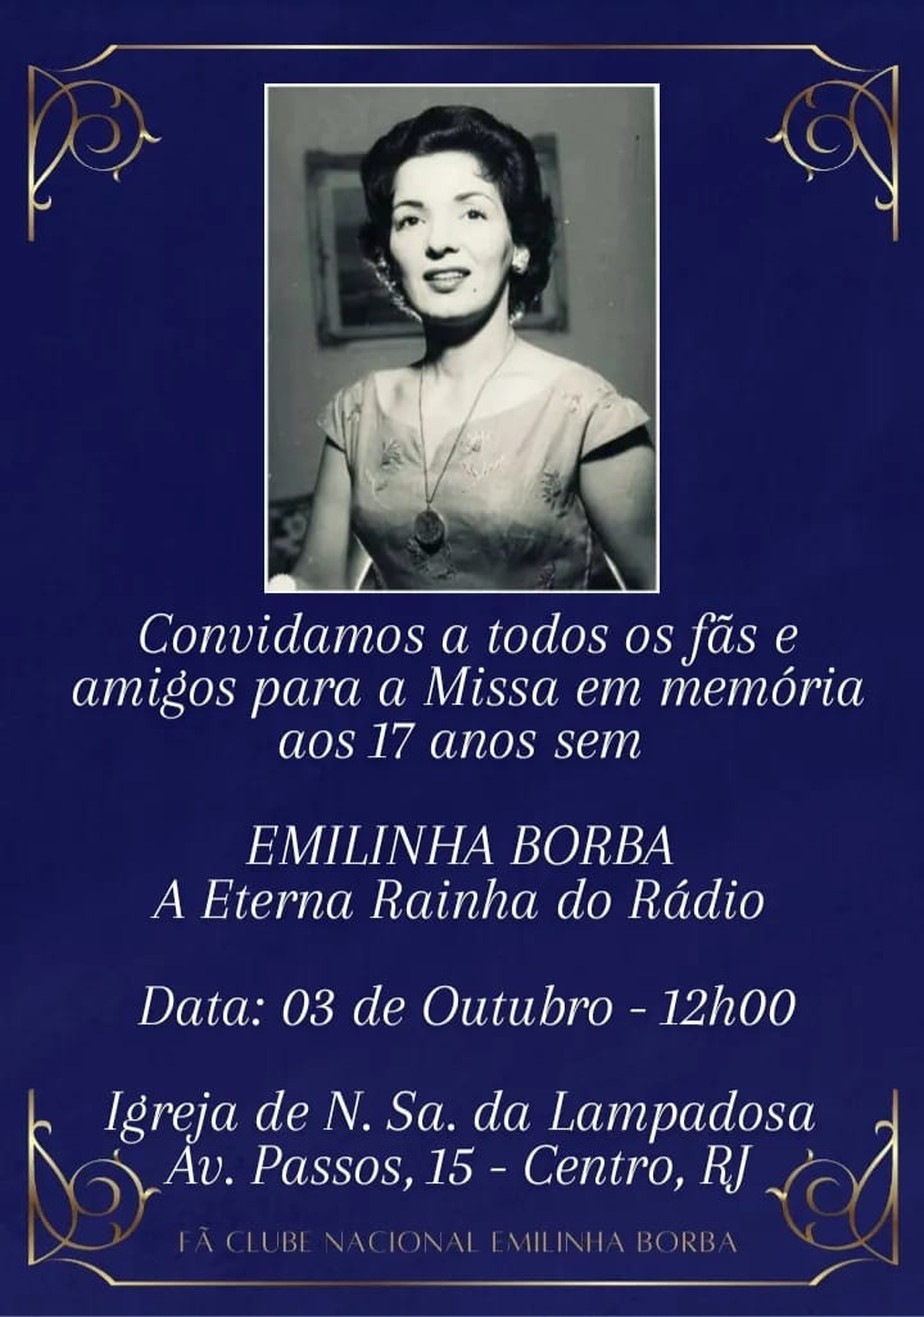 A cerimônia em homenagem a Emilinha Borba